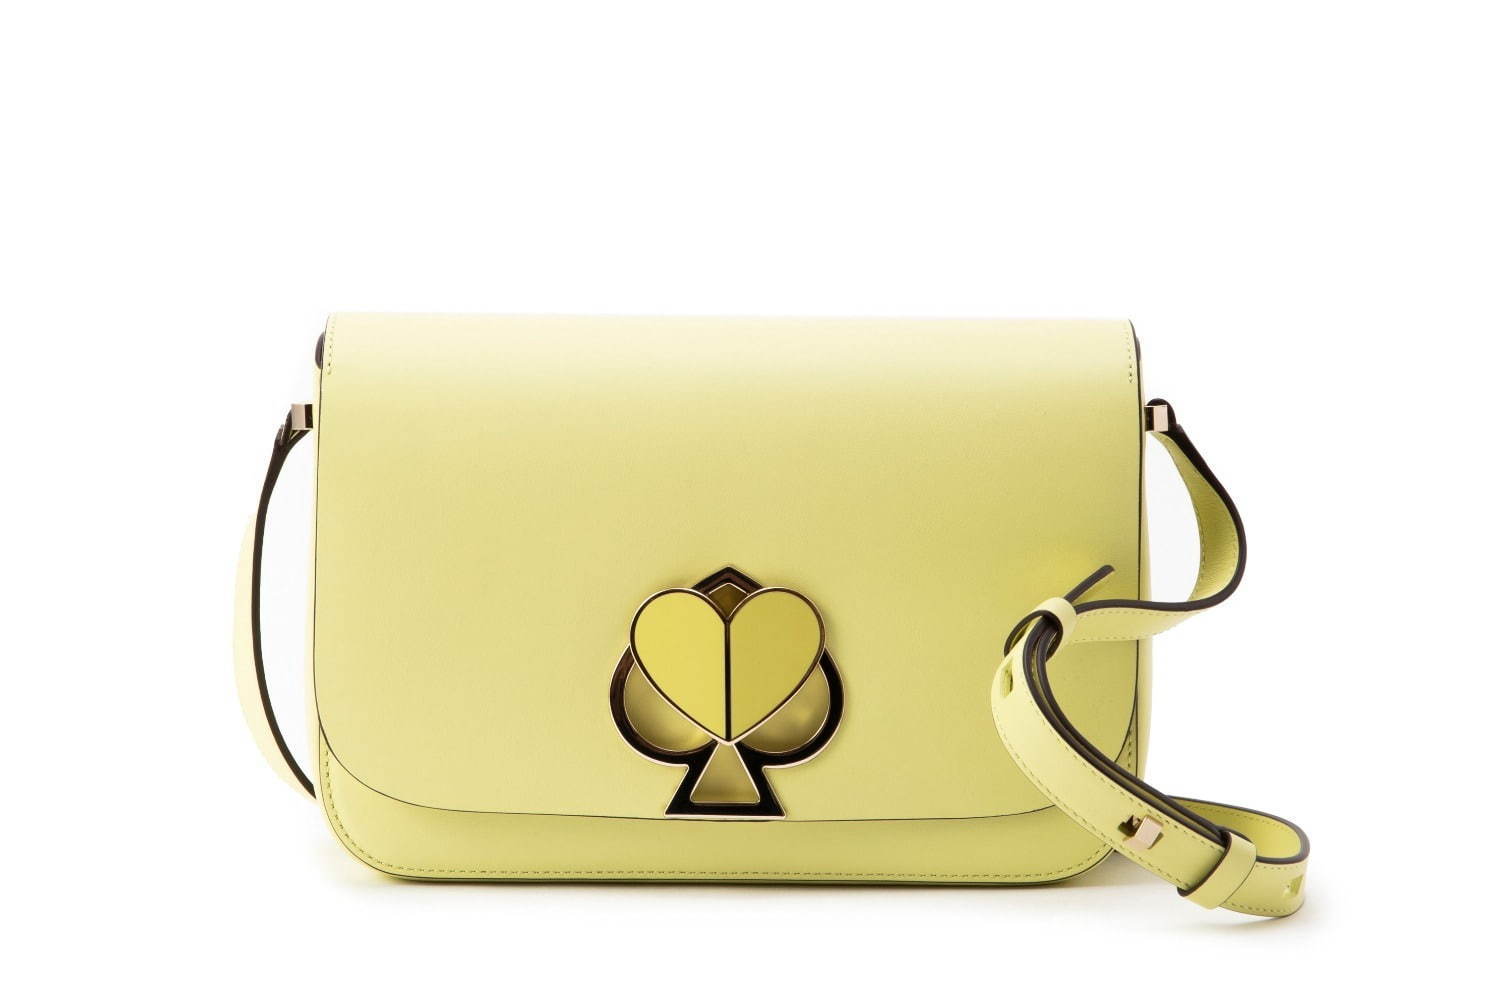 ケイト・スペード、人気バッグ「二コラ」に“レモンシャーベット”カラーの新色